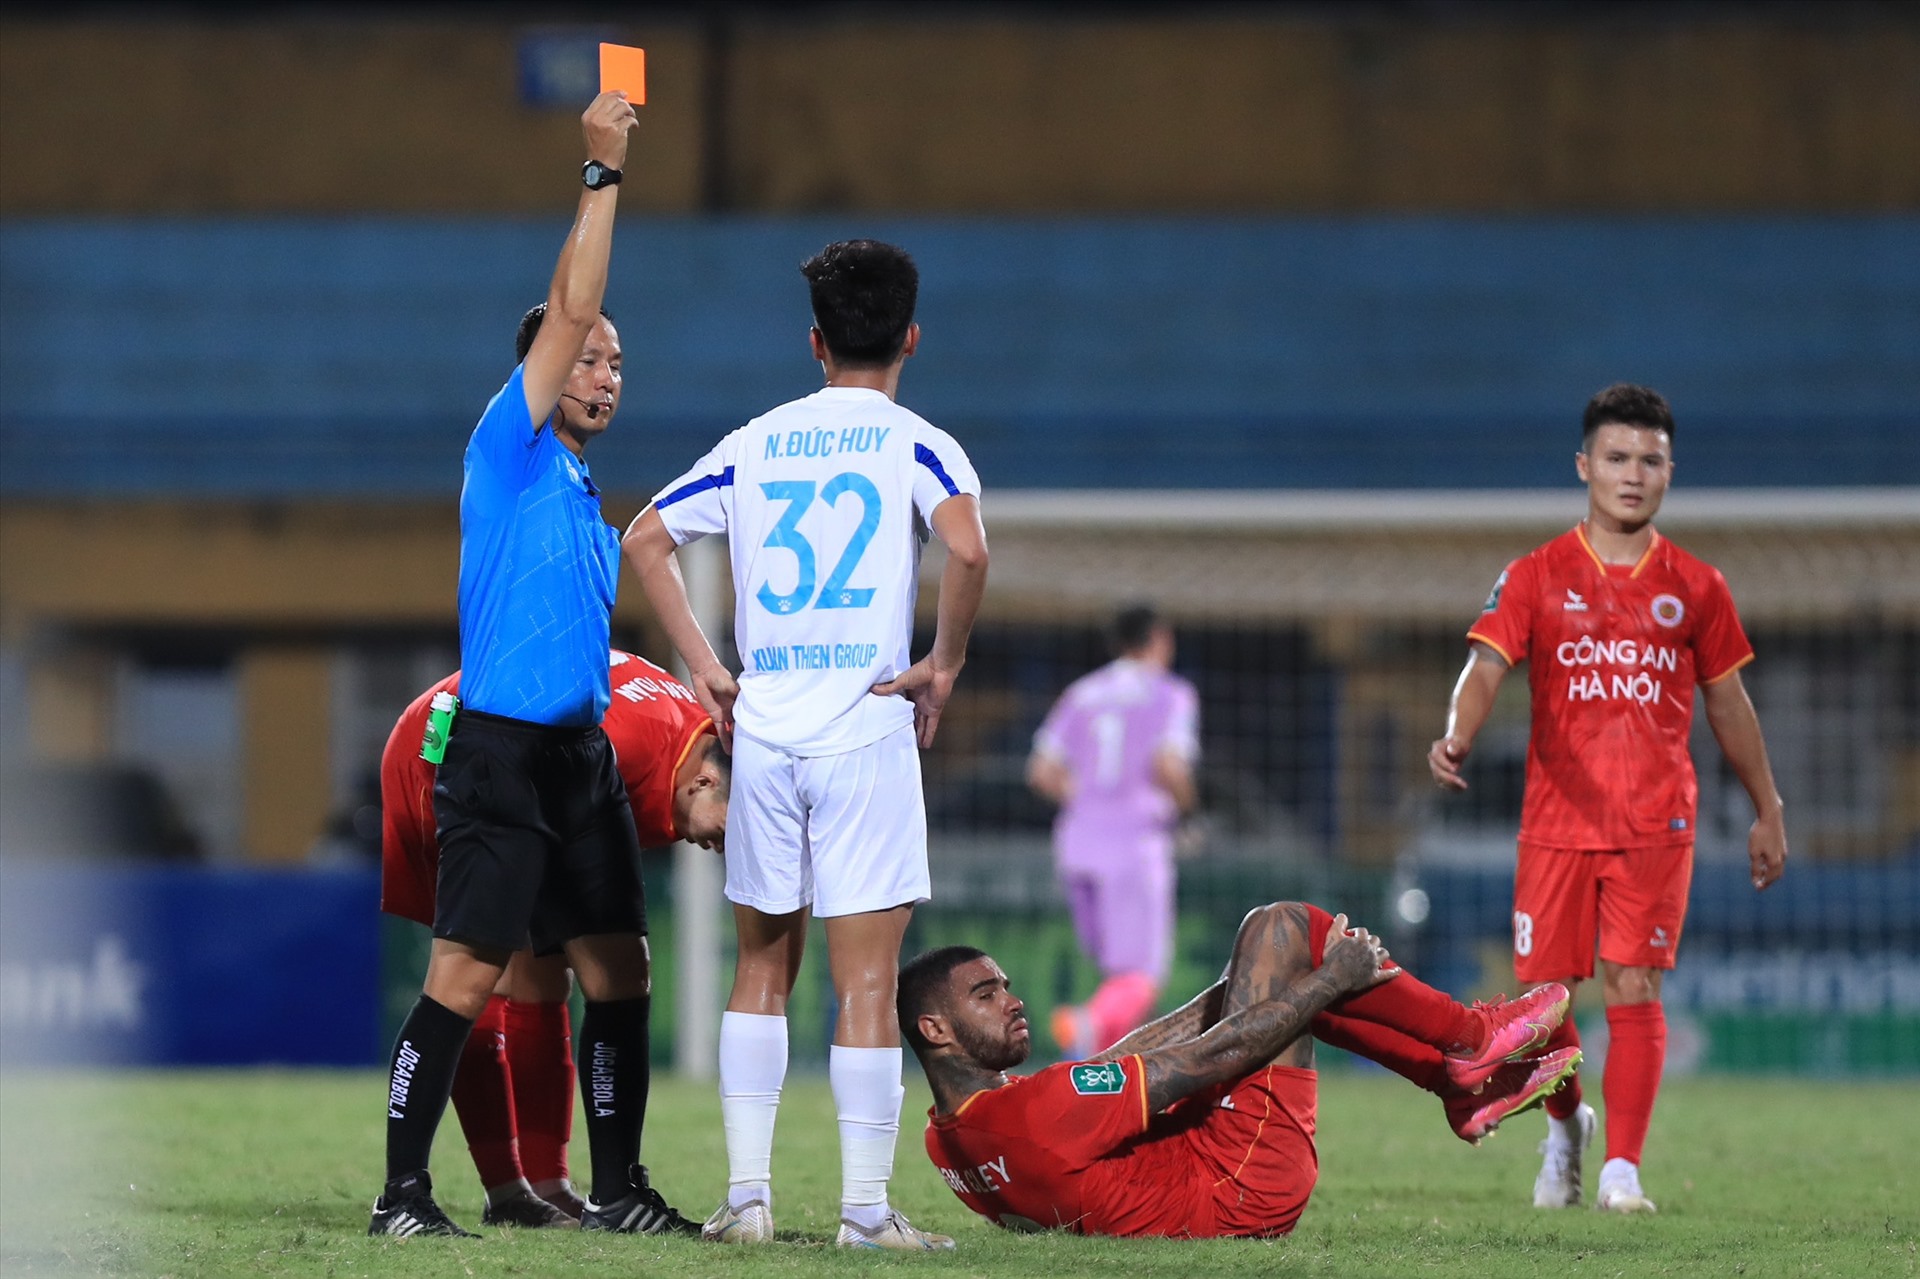 Cầu thủ Đức Huy của Nam Định nhận thẻ đỏ rời sân. Ảnh: Minh Dân